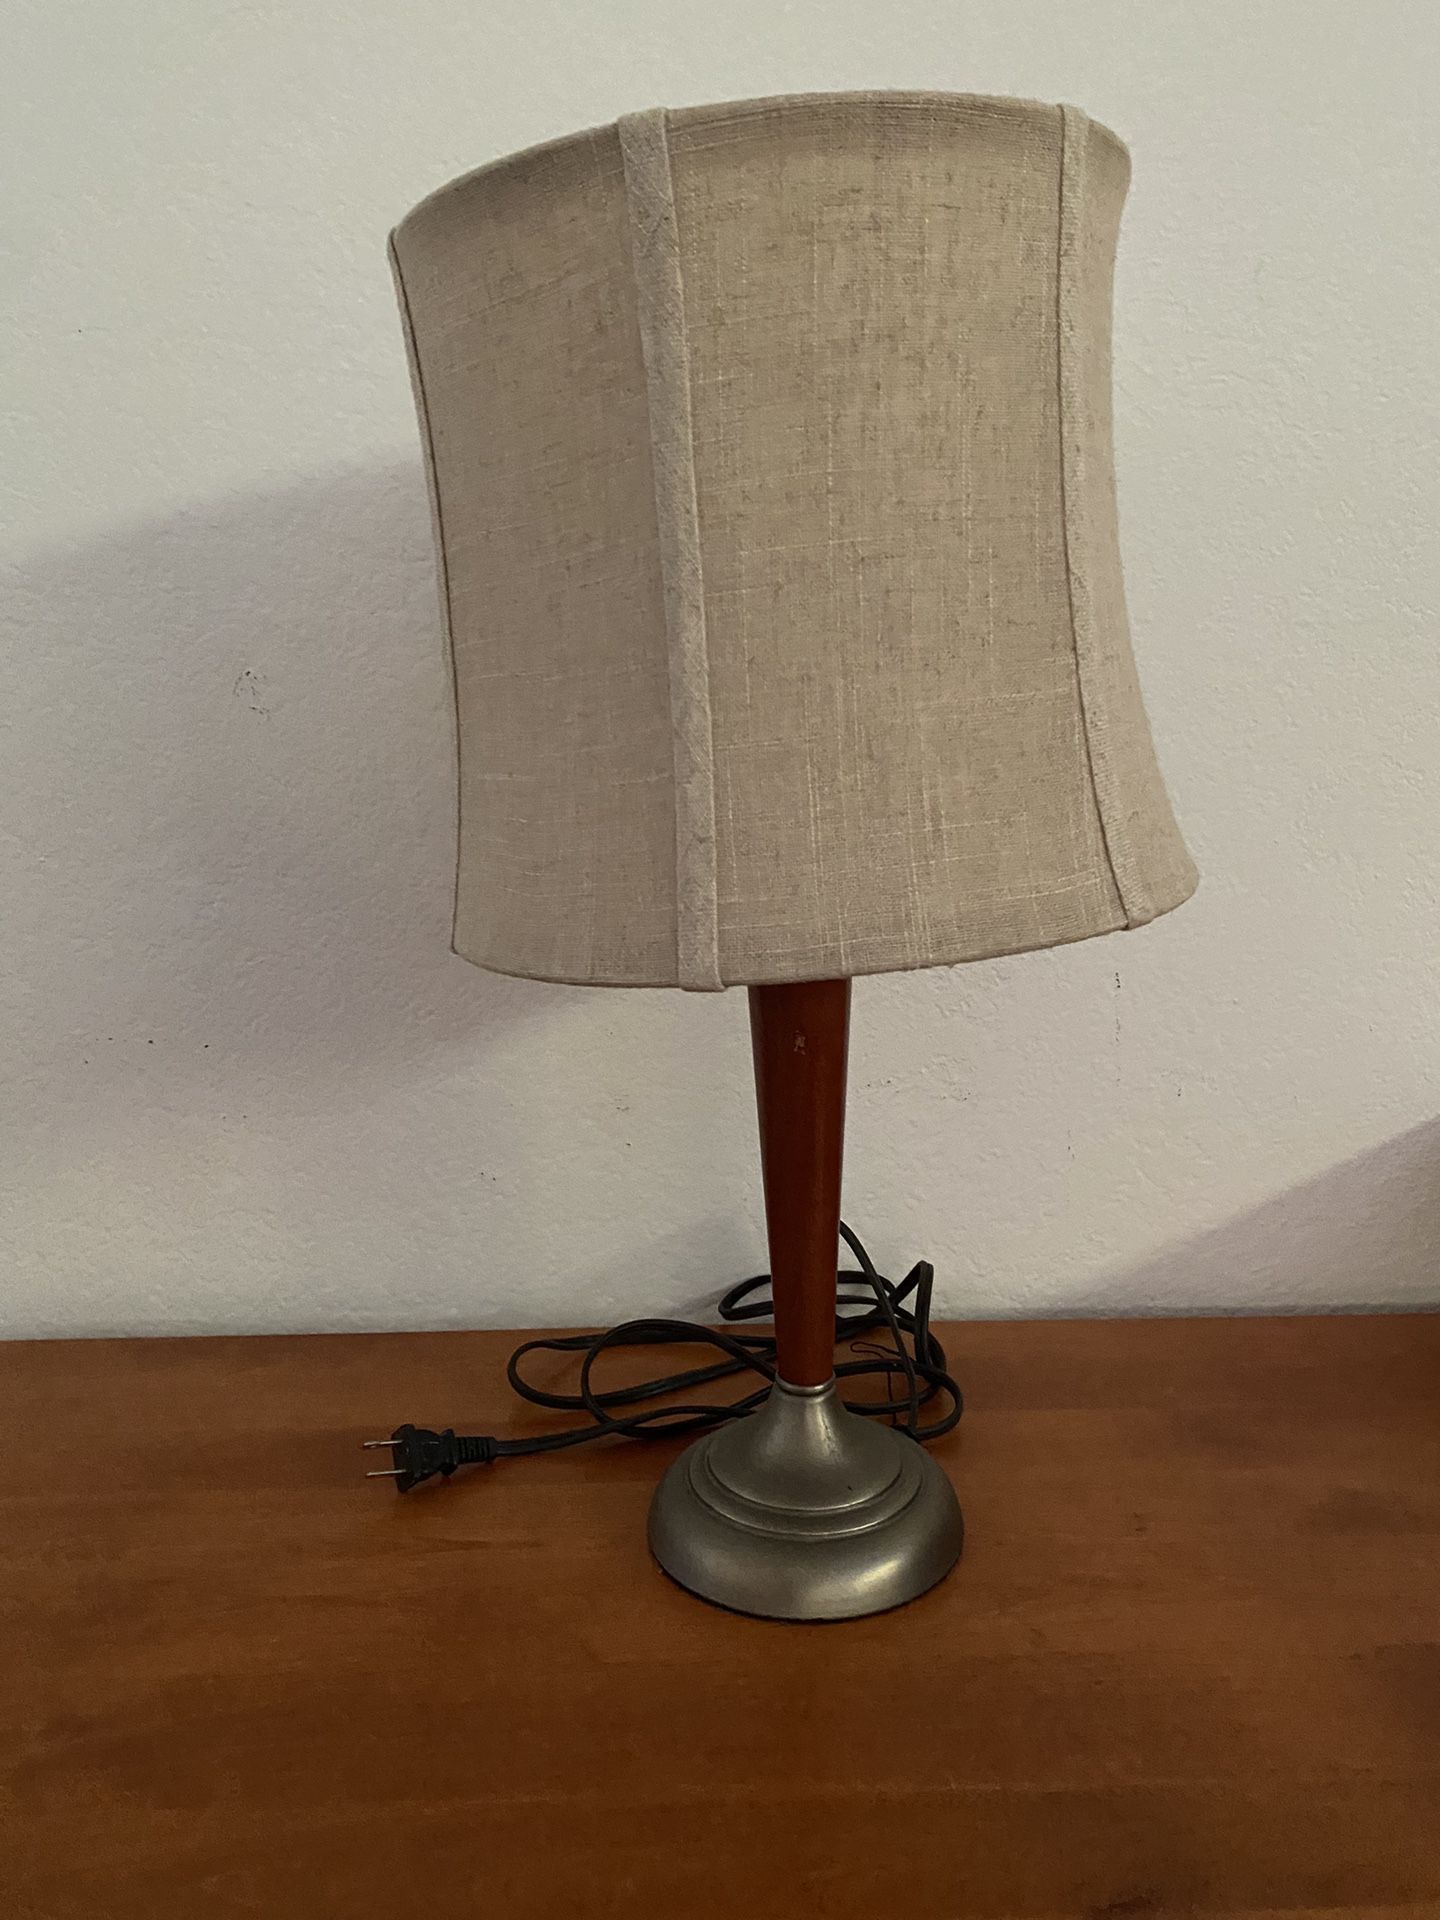 Lamp $30-$65